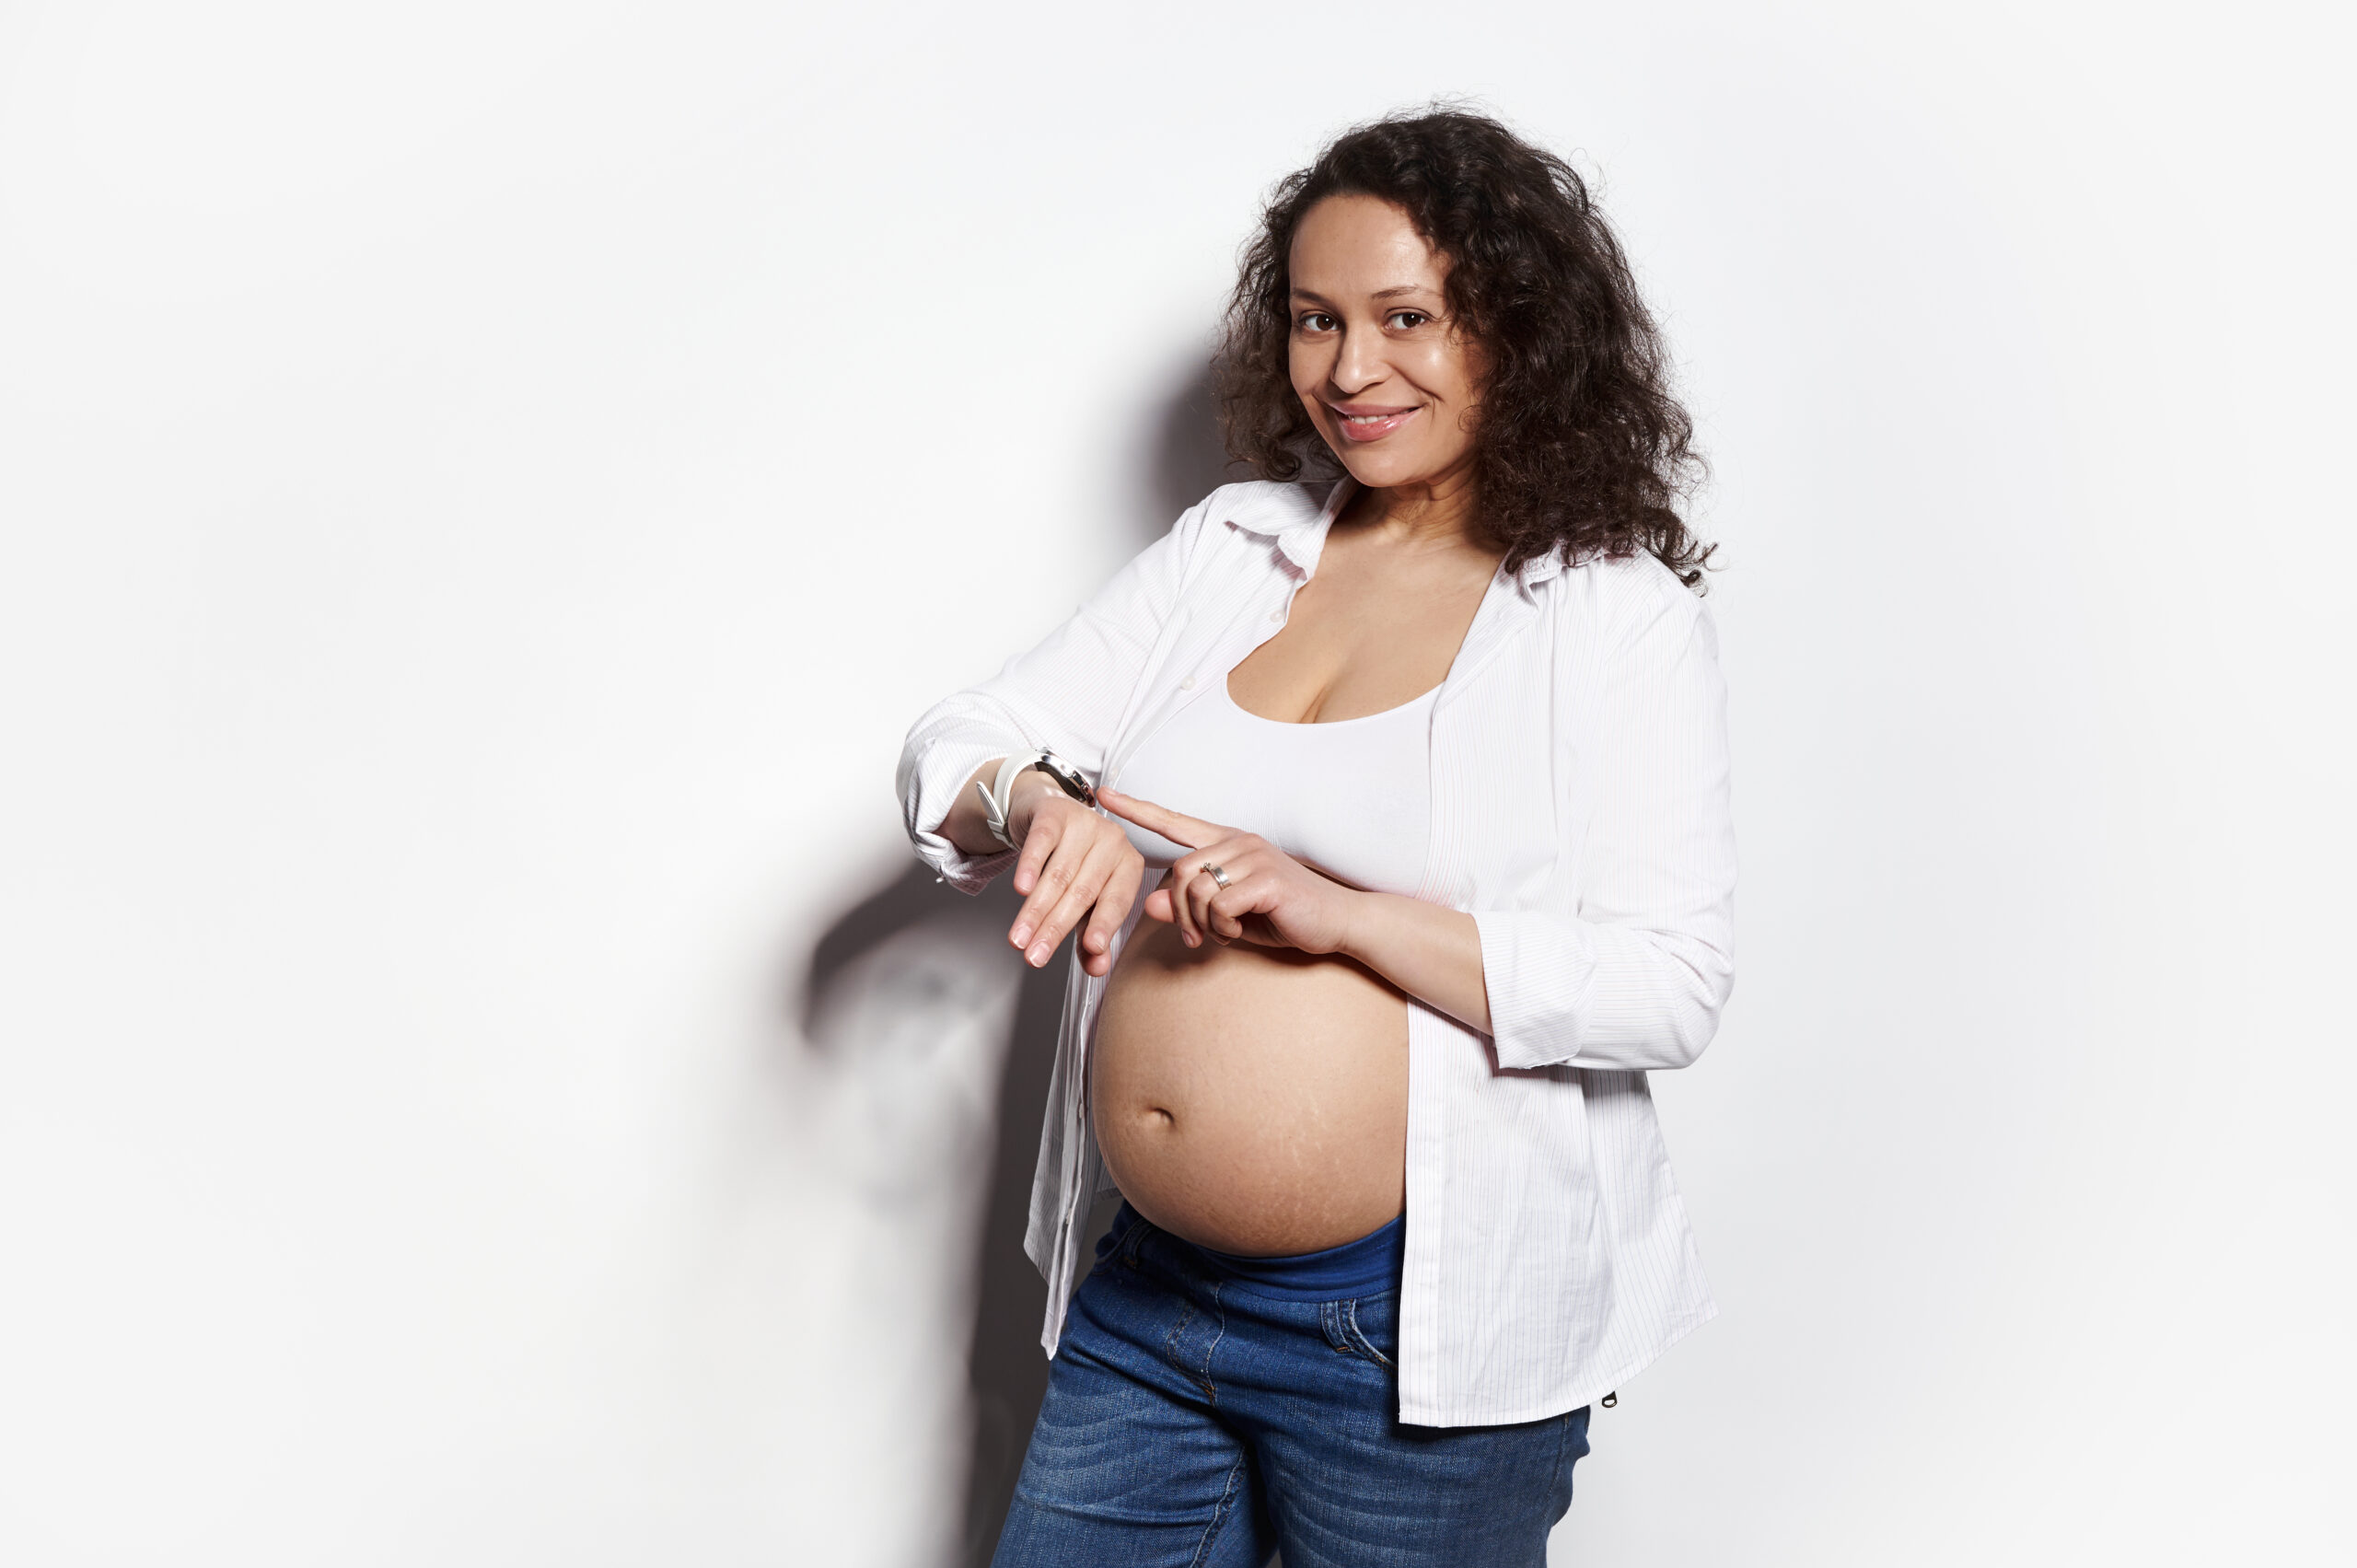 Obrazek ukazuje kobietę w zaawansowanej ciąży, stojącą przed białą ścianą, skupioną na obserwowaniu zegarka na swojej ręce. Jej spojrzenie pełne oczekiwania i niepewności sugeruje, że może to być moment, w którym oczekuje na ważne wydarzenie związane z ciążą, takie jak planowana wizyta u lekarza lub poród.